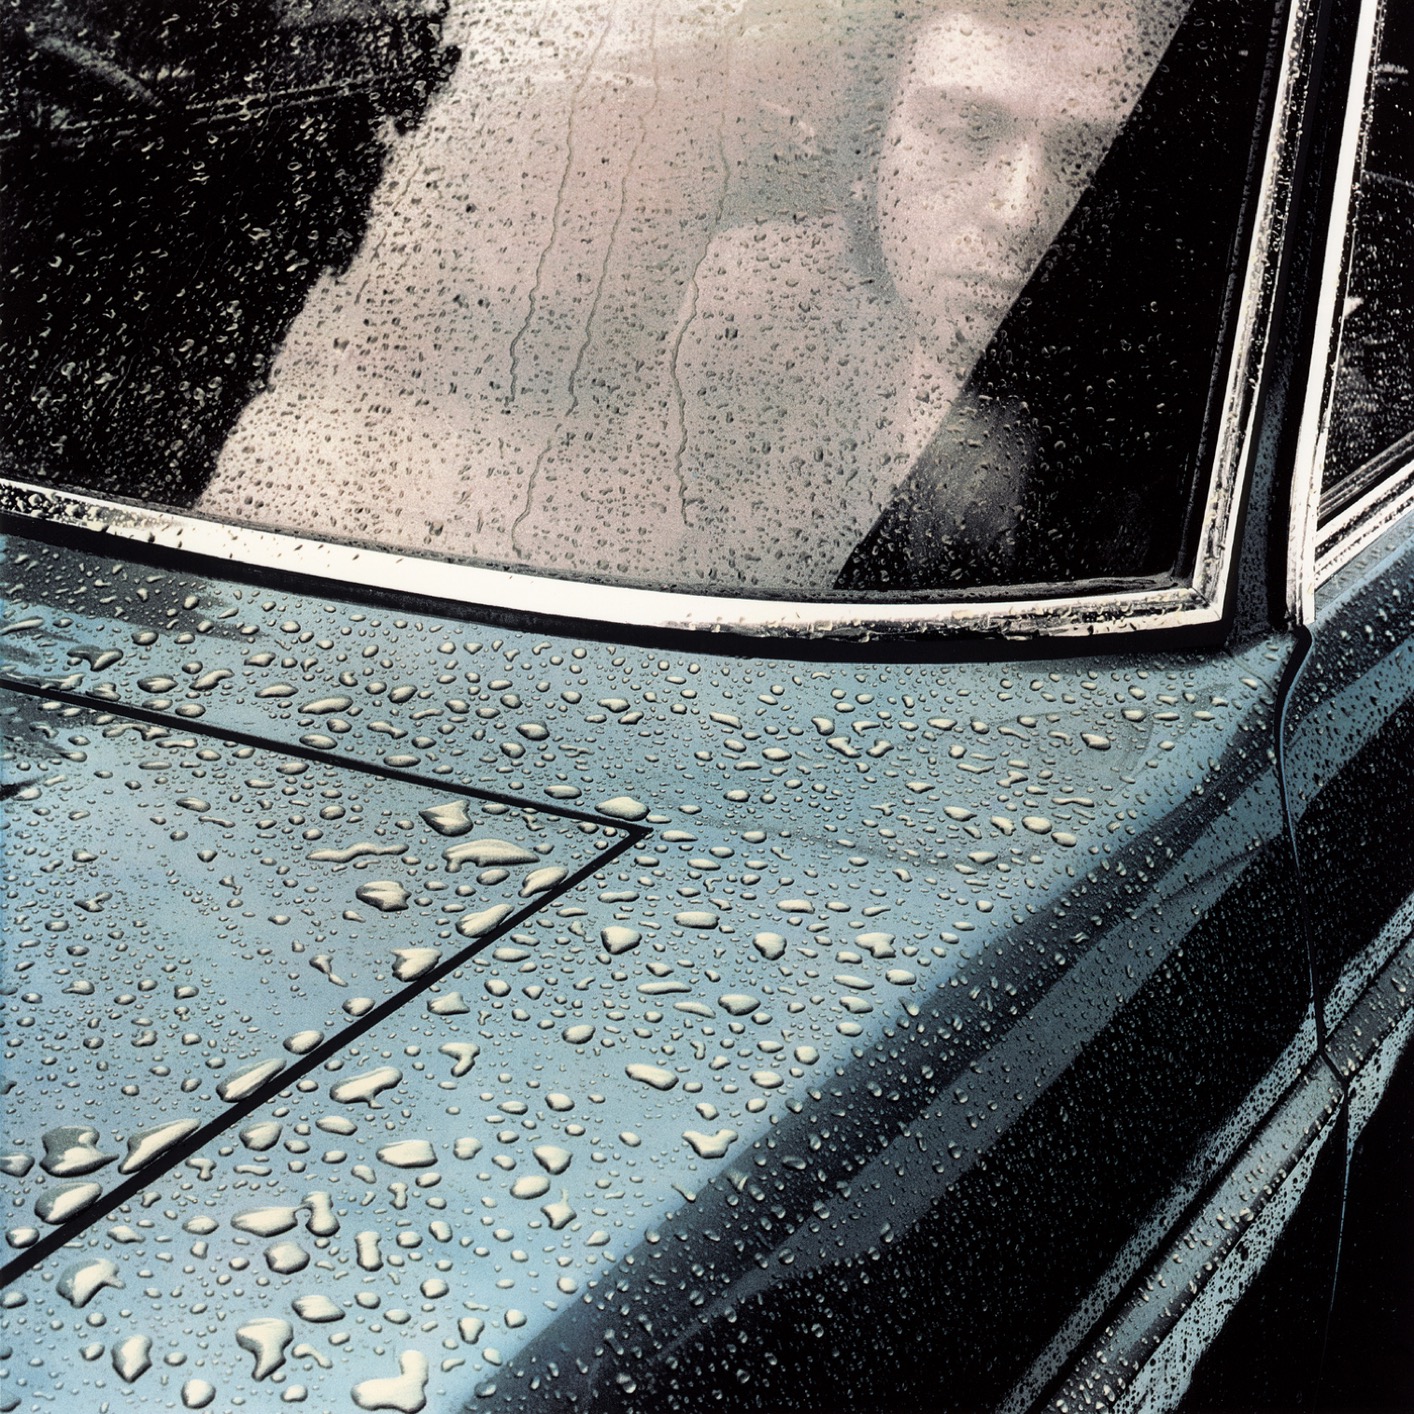 Peter Gabriel - Peter Gabriel 1: Car (Remastered) (1977/2019) [FLAC 24bit/96kHz]